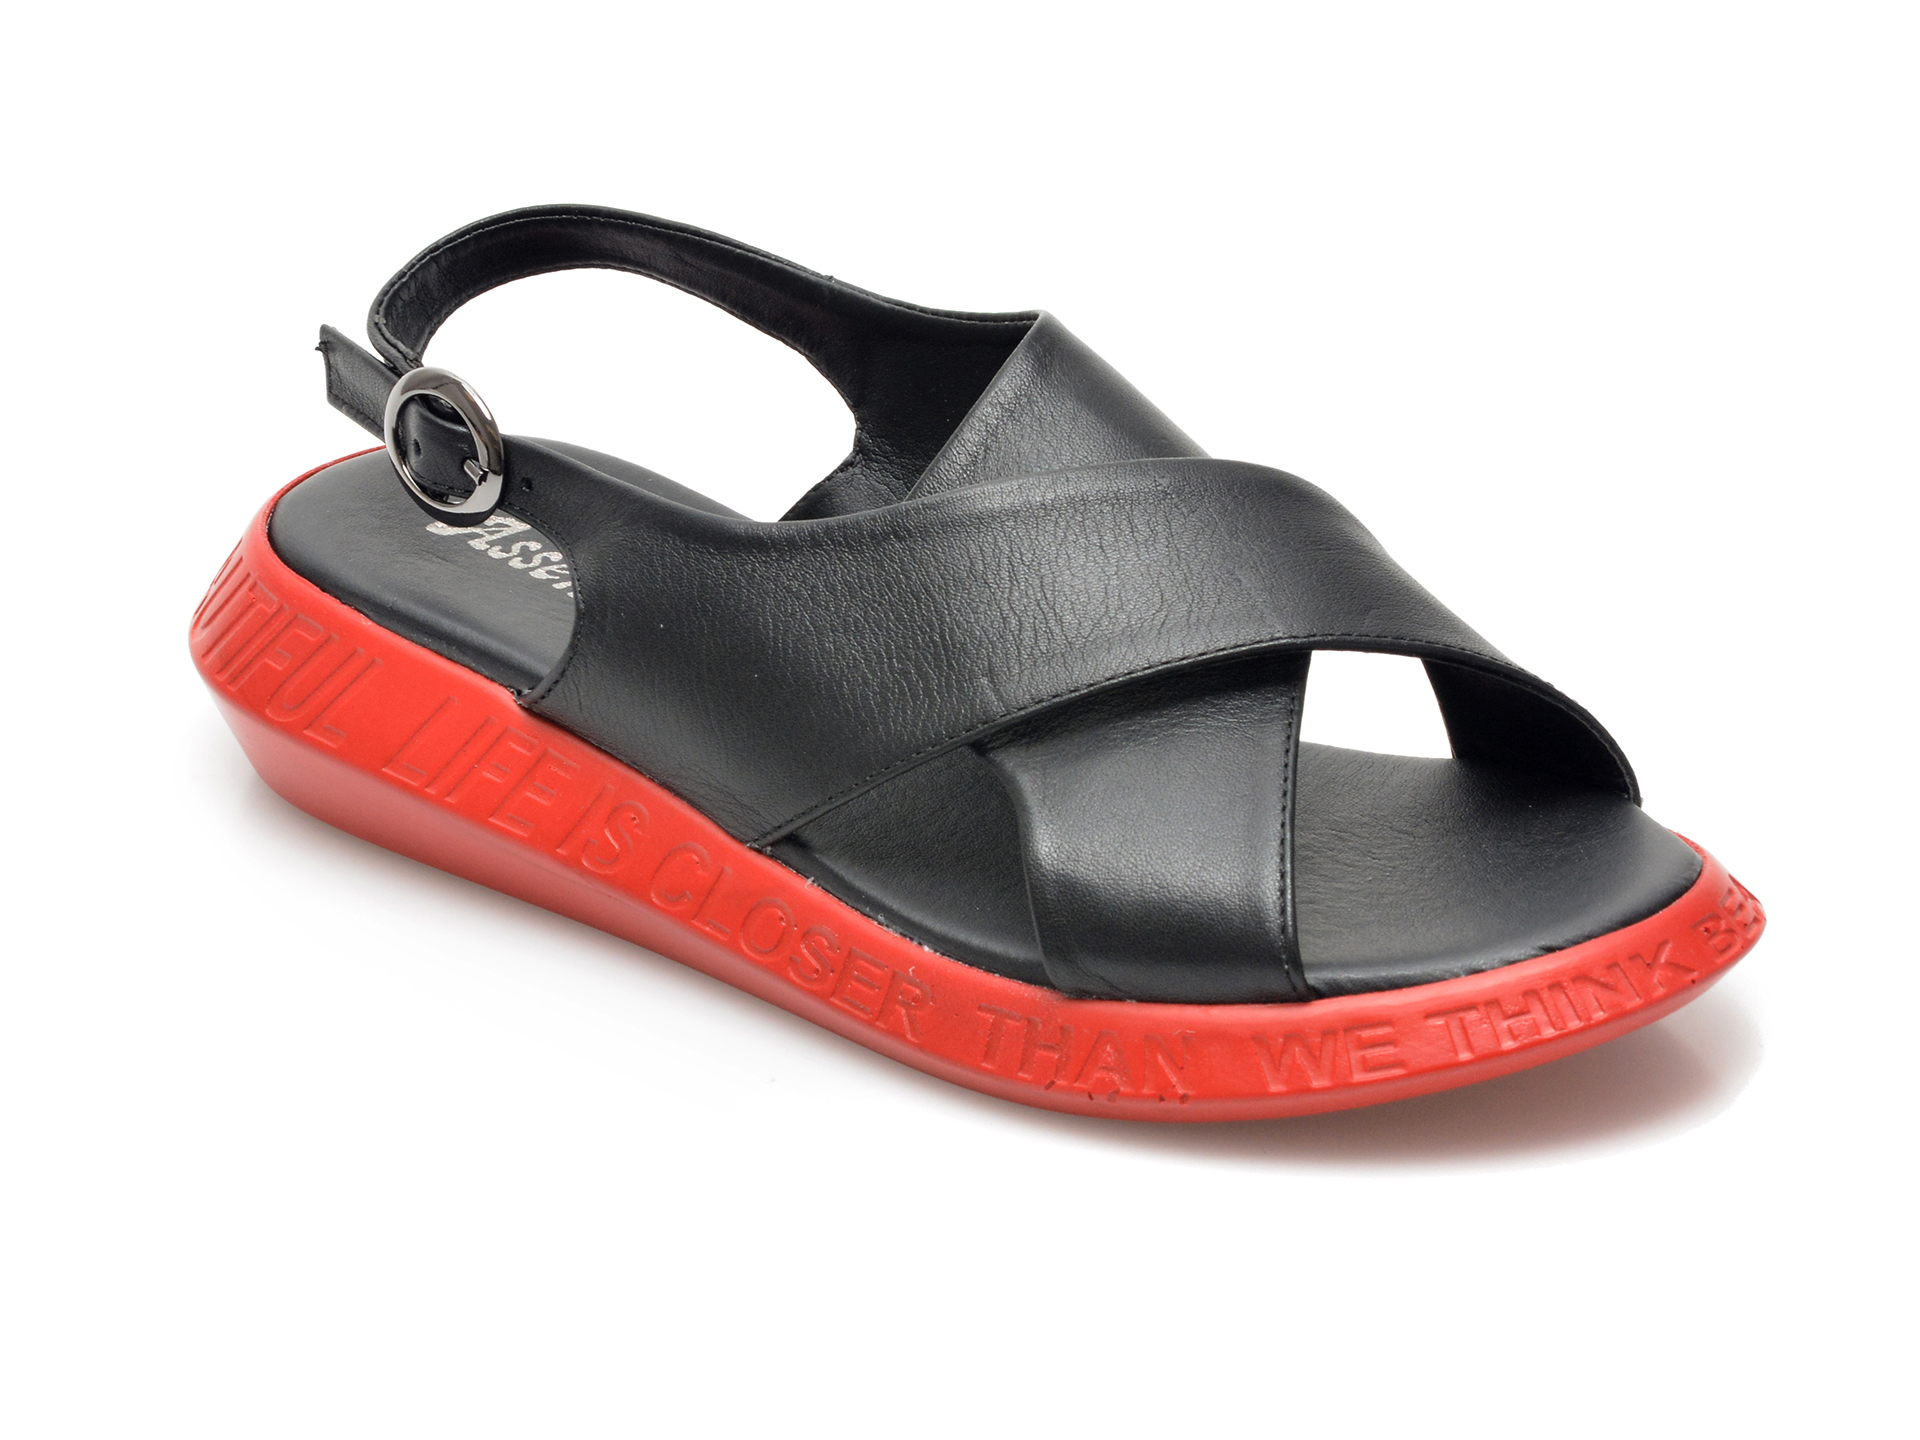 Sandale ASSENSO FERRO negre, 21004, din piele naturala /femei/sandale